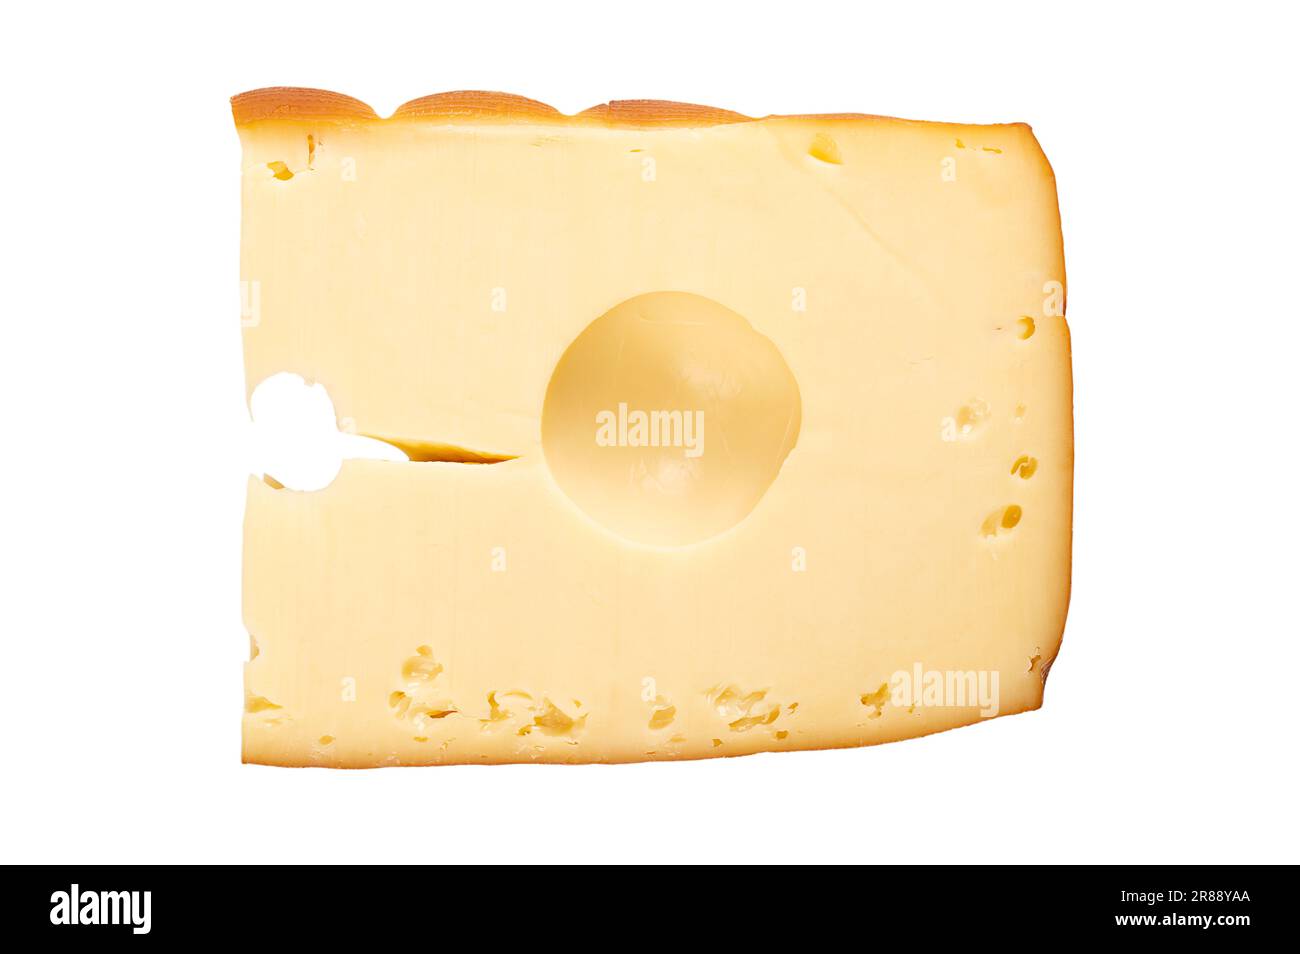 Queso semiduro ahumado con agujeros grandes. Aromático queso Traunstein amarillo de textura suave de Alta Austria, elaborado con leche de vaca madura. Foto de stock